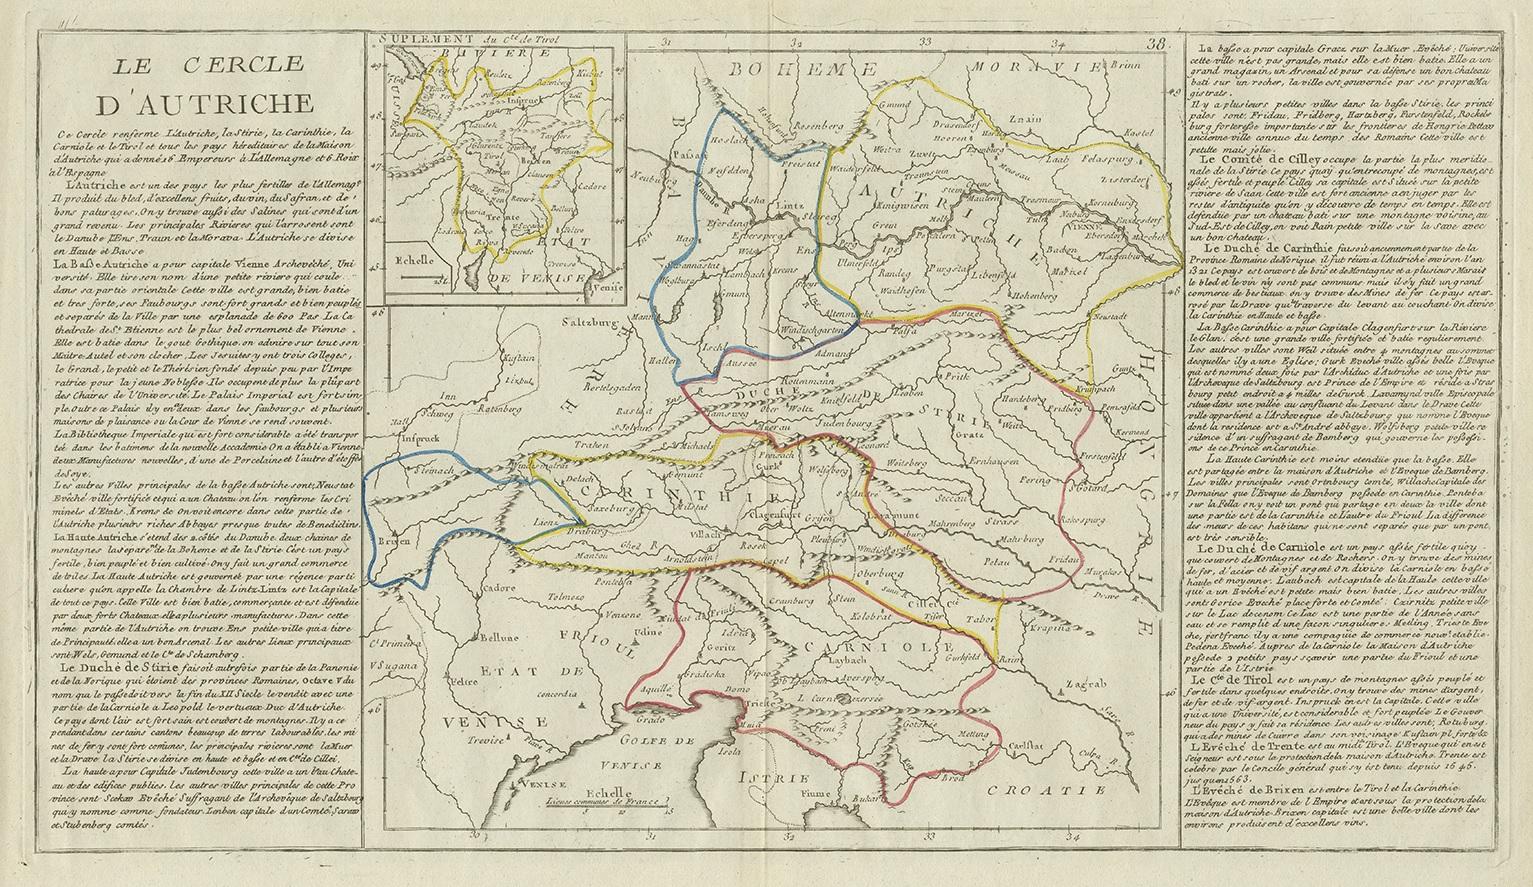 Antique map titled 'Le Cercle d'Autriche'. Antique map of Austria. Originates from 'Geographie moderne avec une introduction' by J.B.L. Clouet.